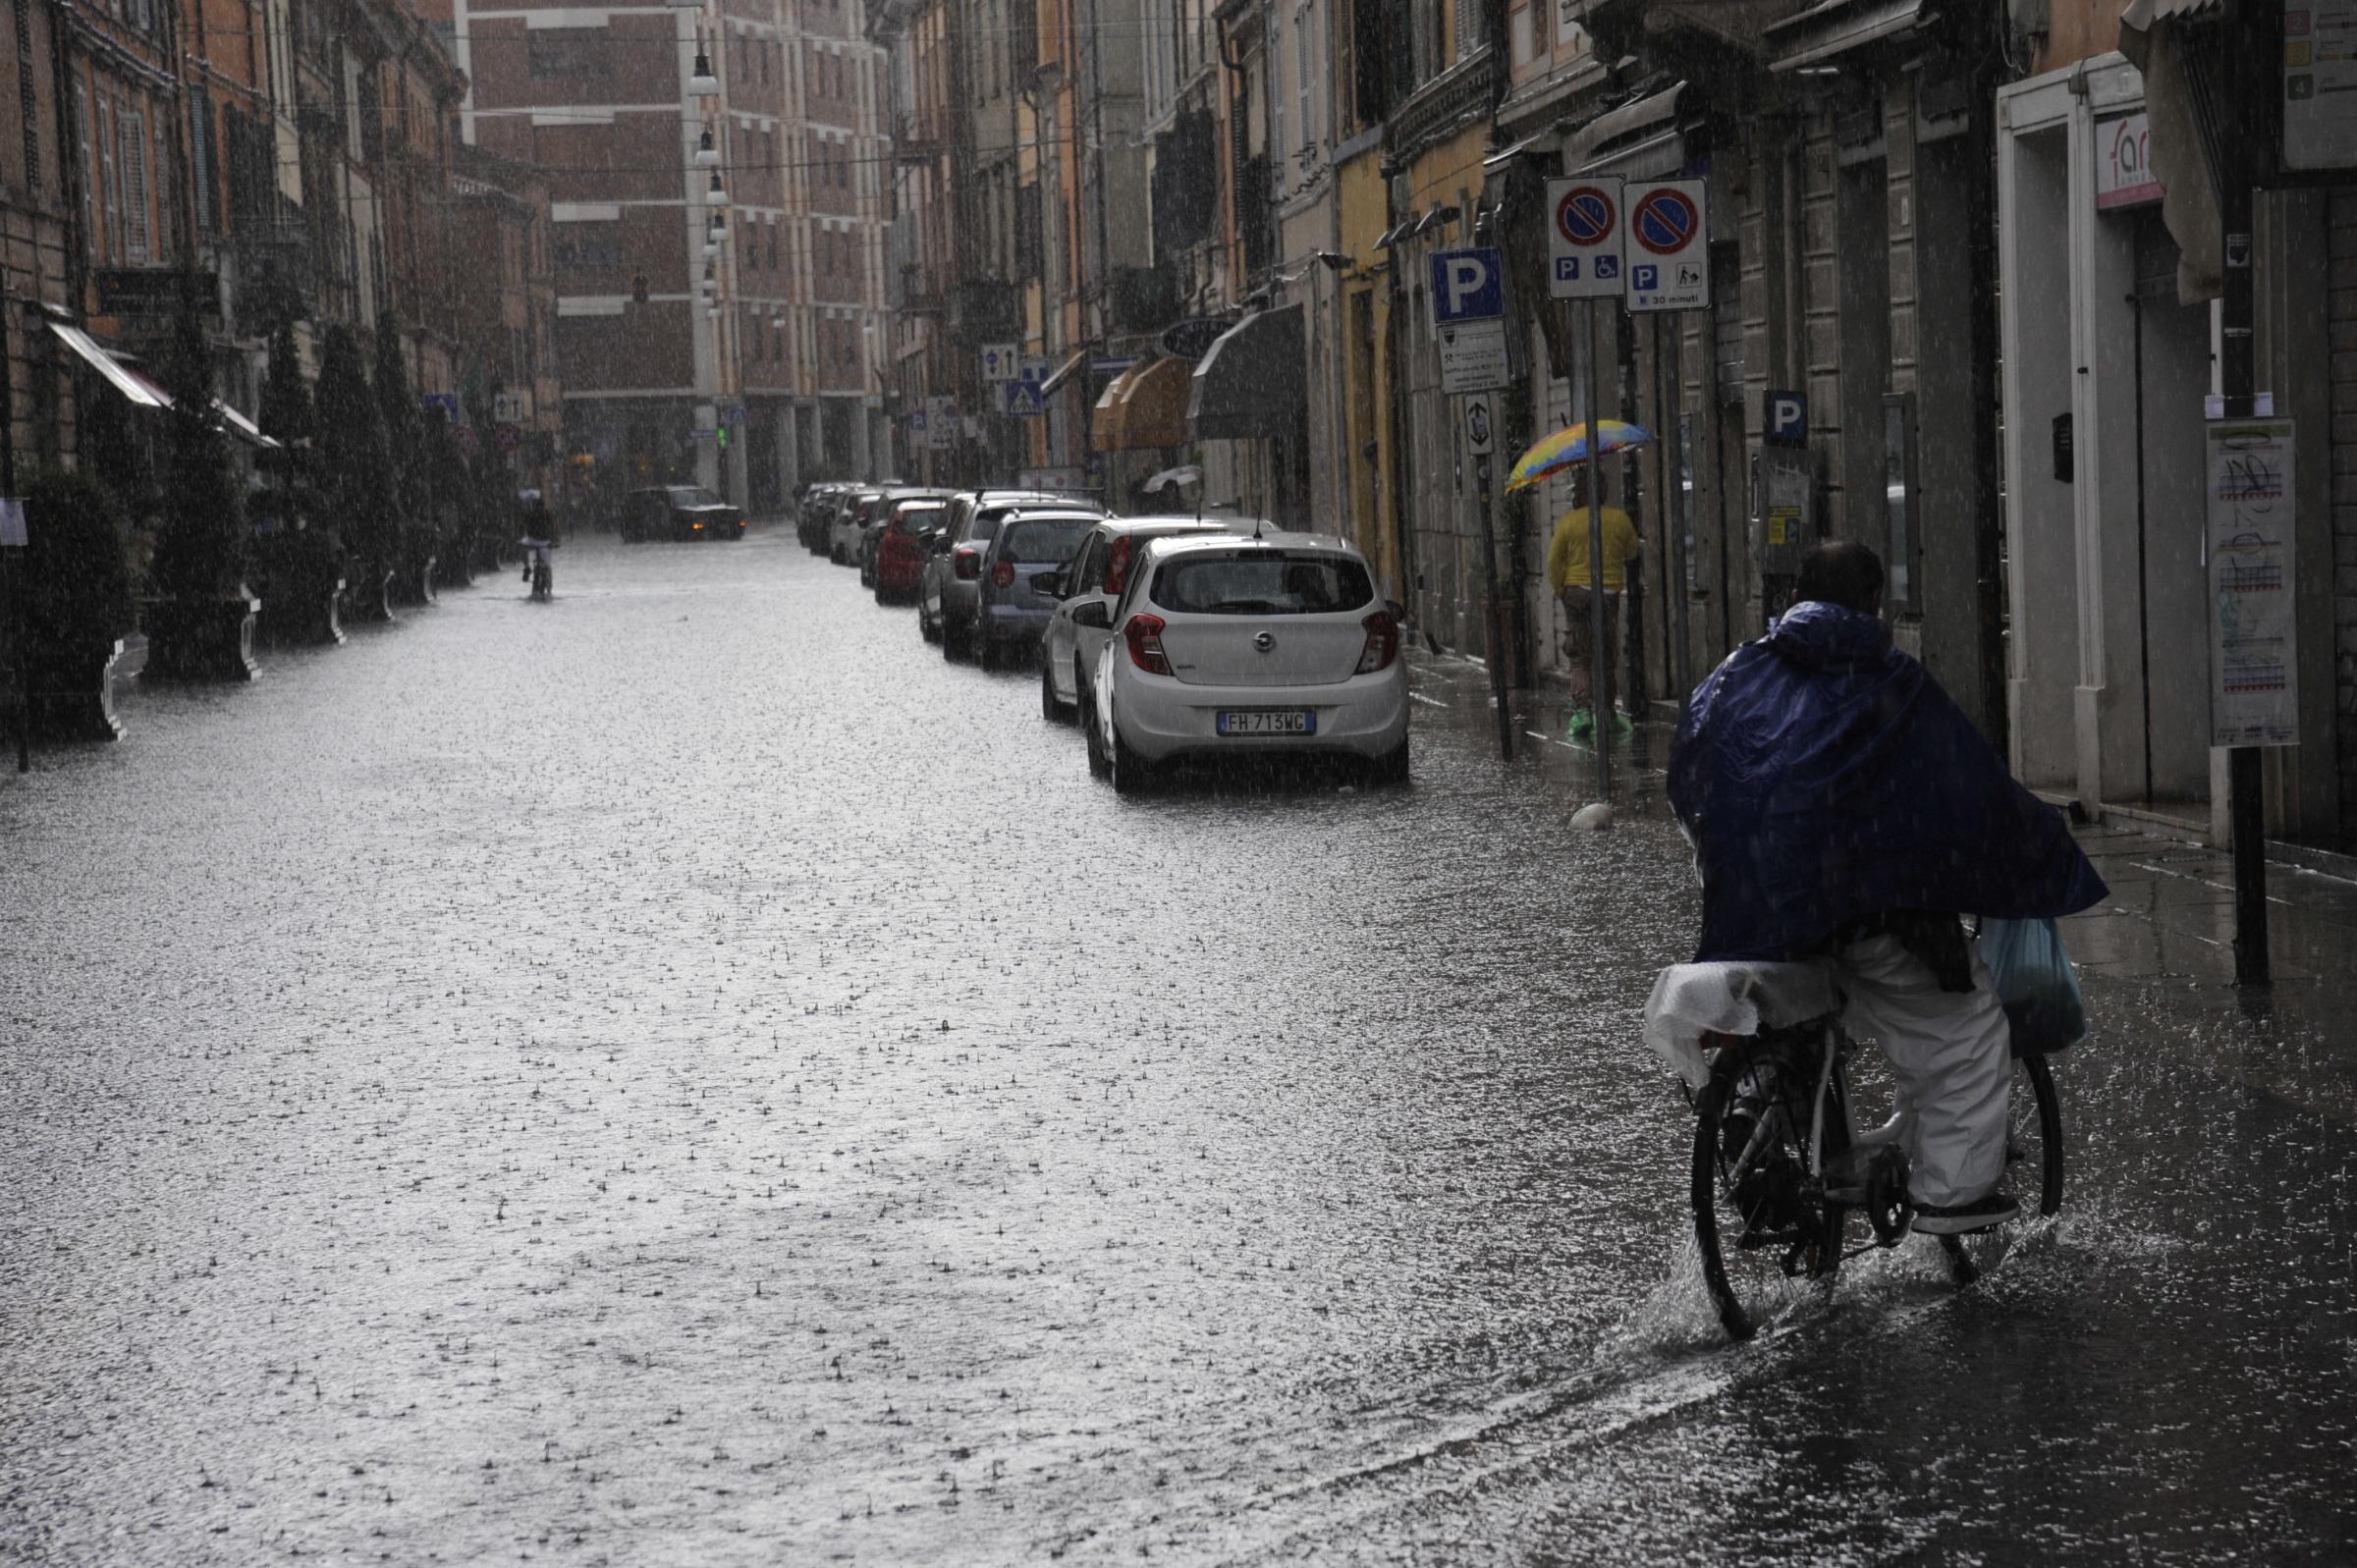 Forlì, ancora sotto una pioggia da record: in 2 ore l’acqua di un mese e mezzo